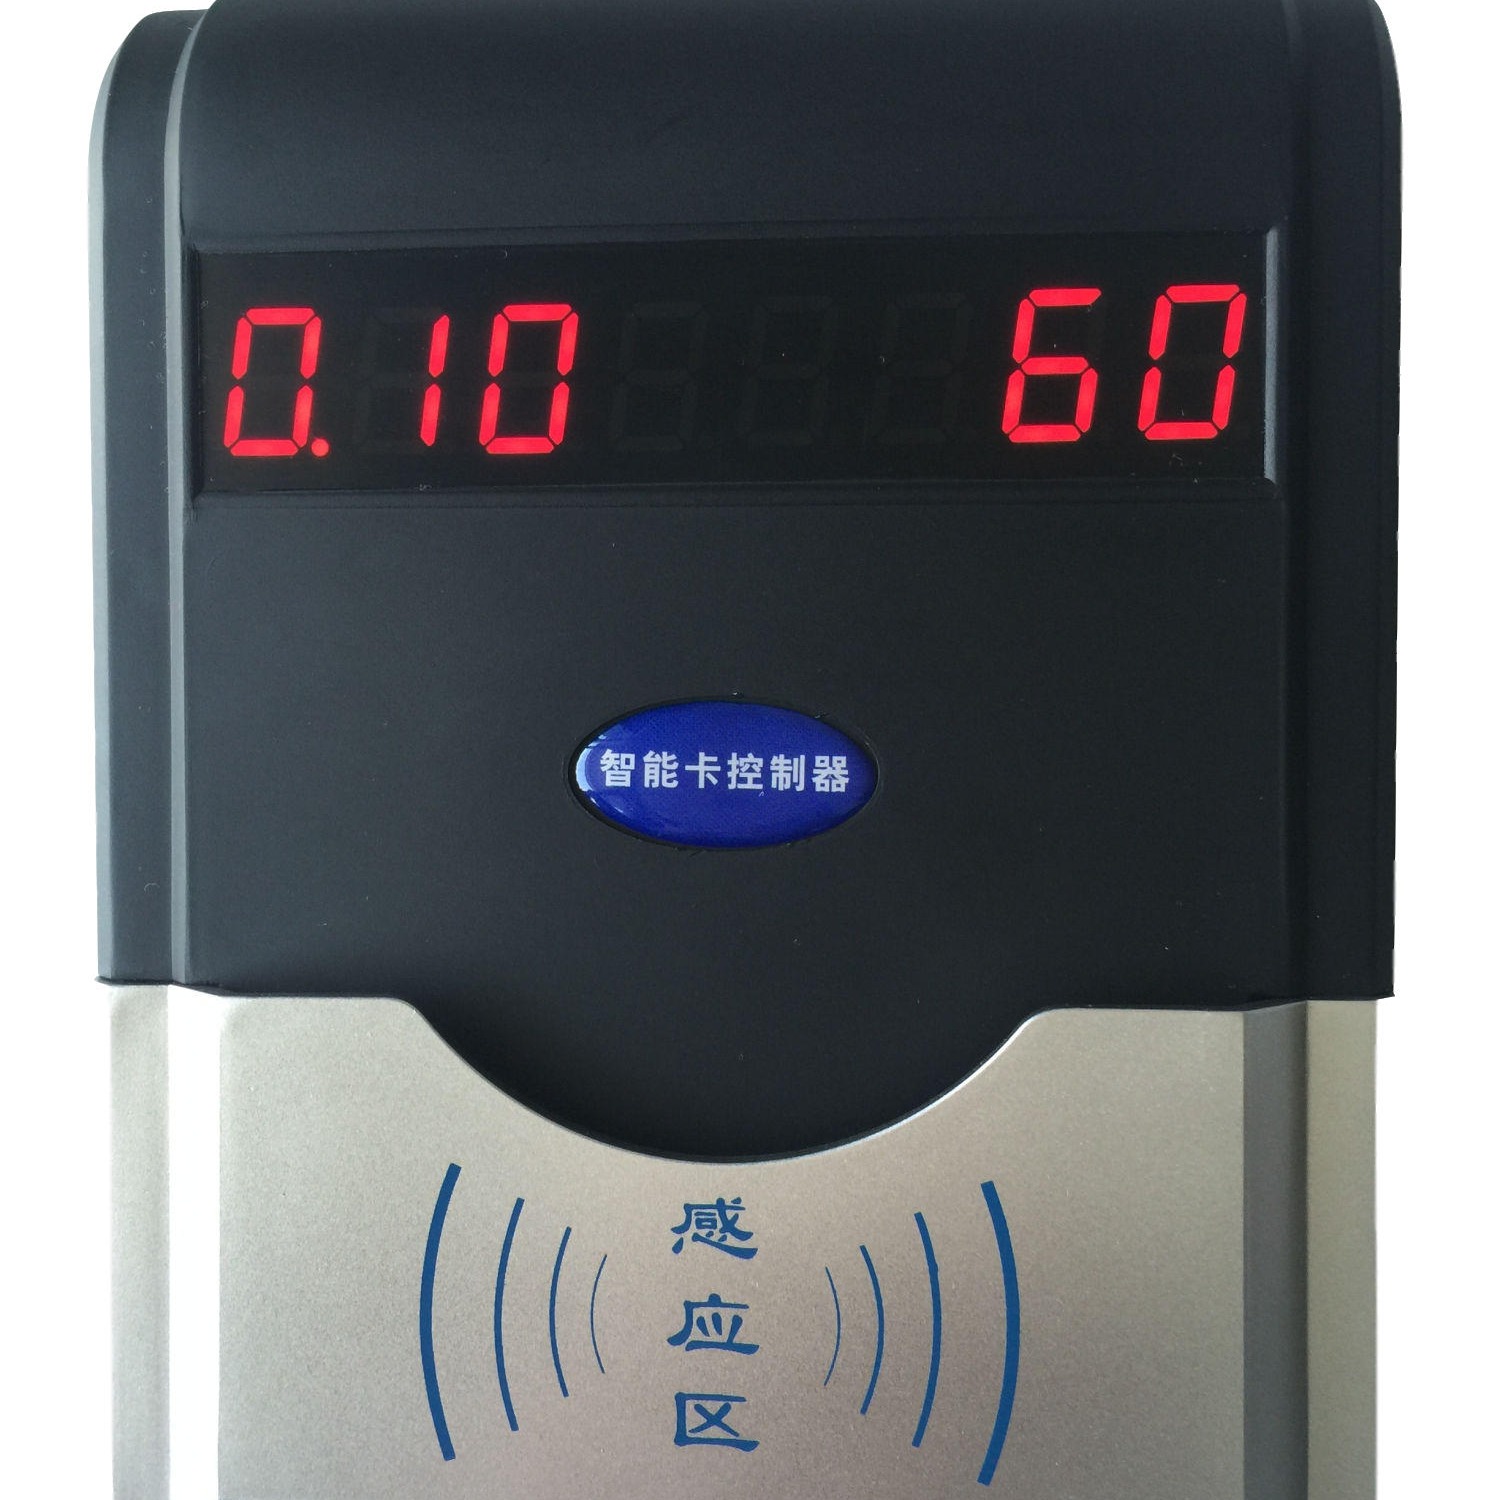 兴天下HF-660 IC卡淋浴刷卡控水器,刷卡控水淋浴器,IC卡水控机